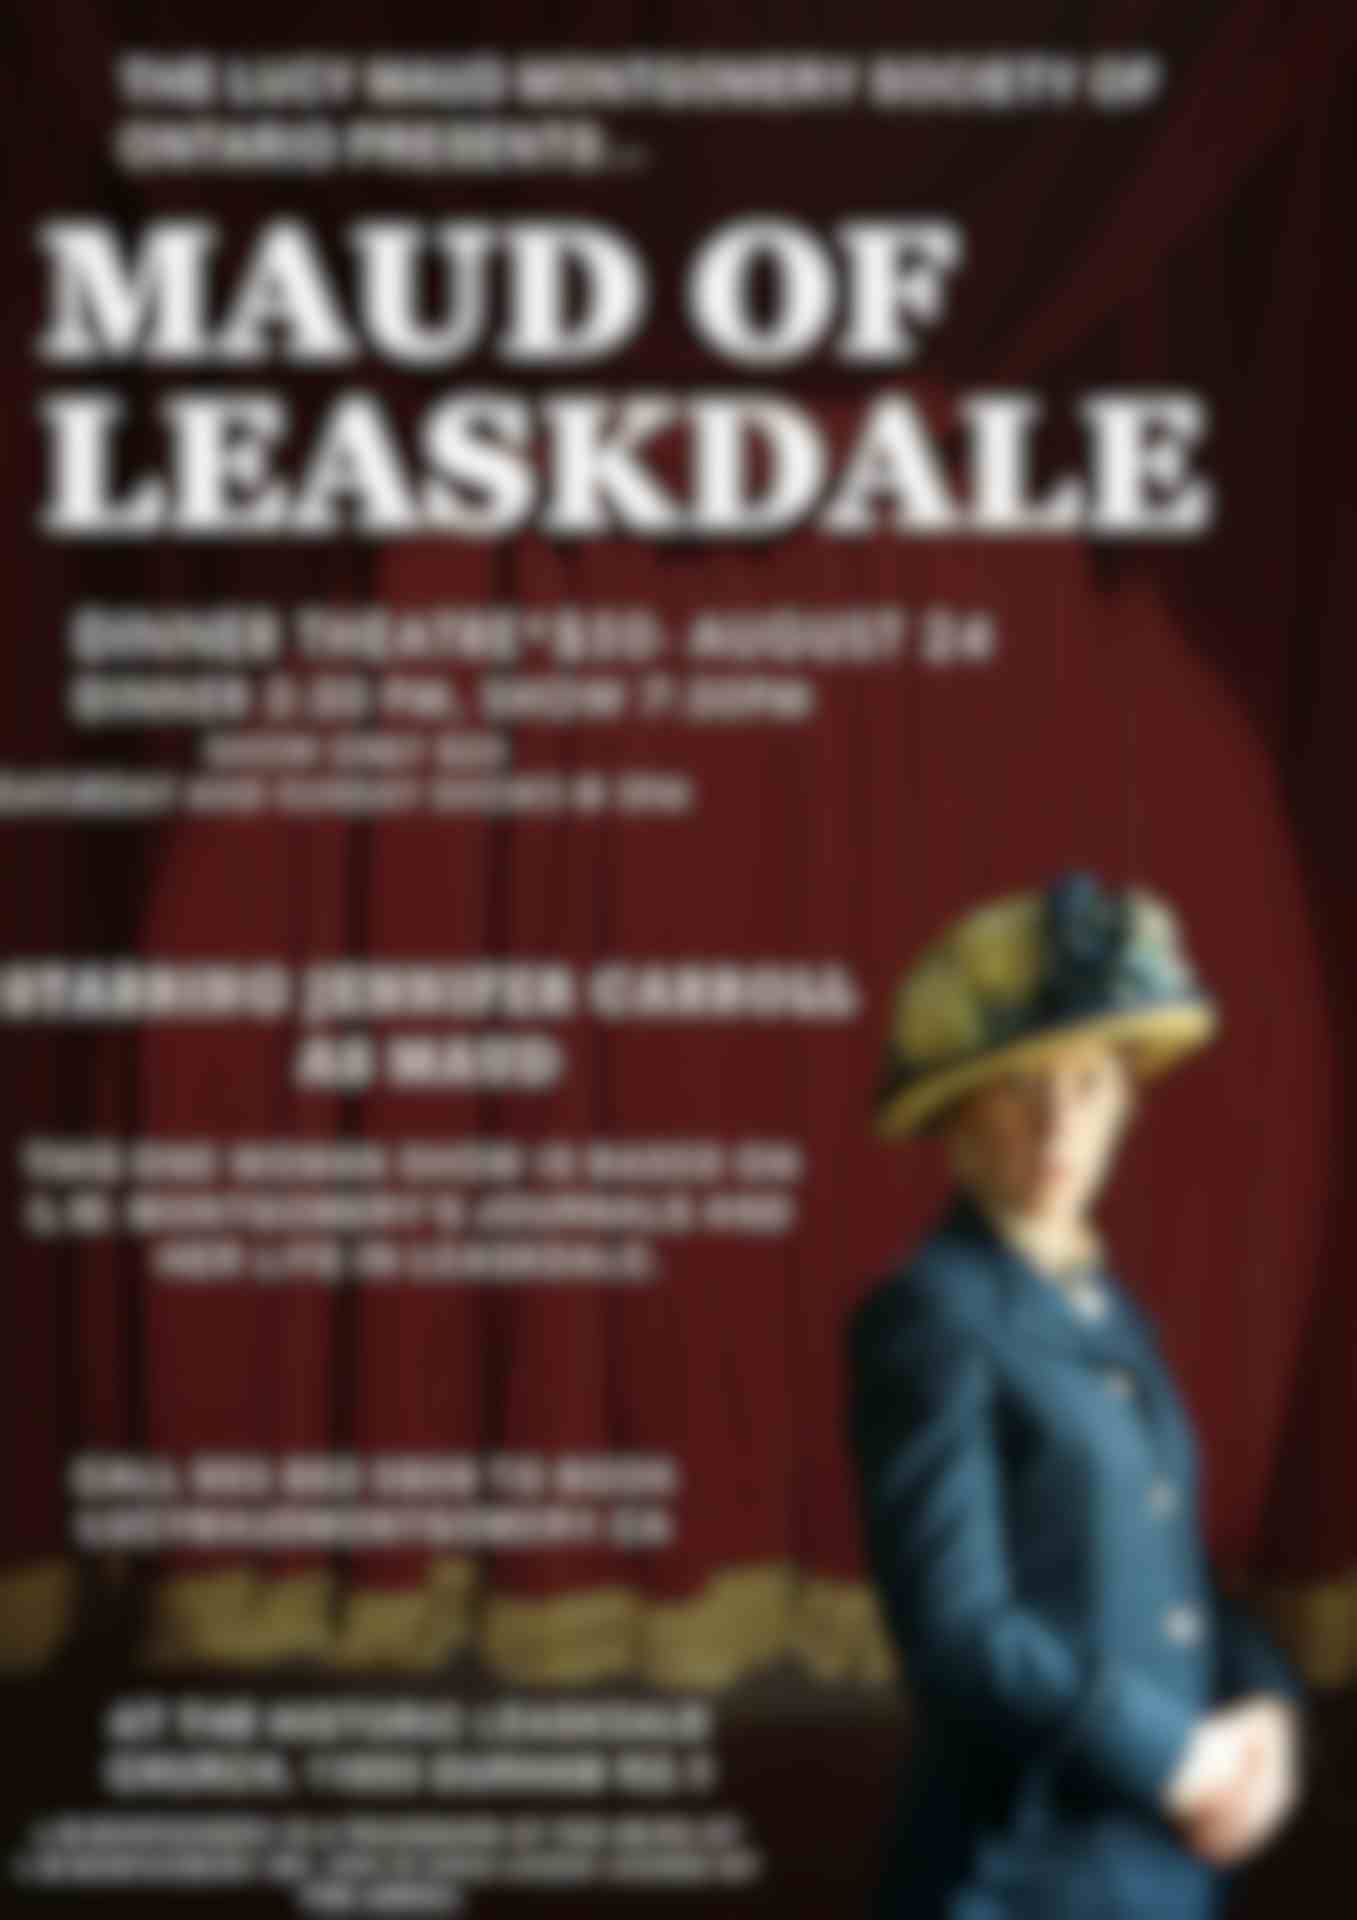 Maud of Leaskdale starring Jennifer Carroll